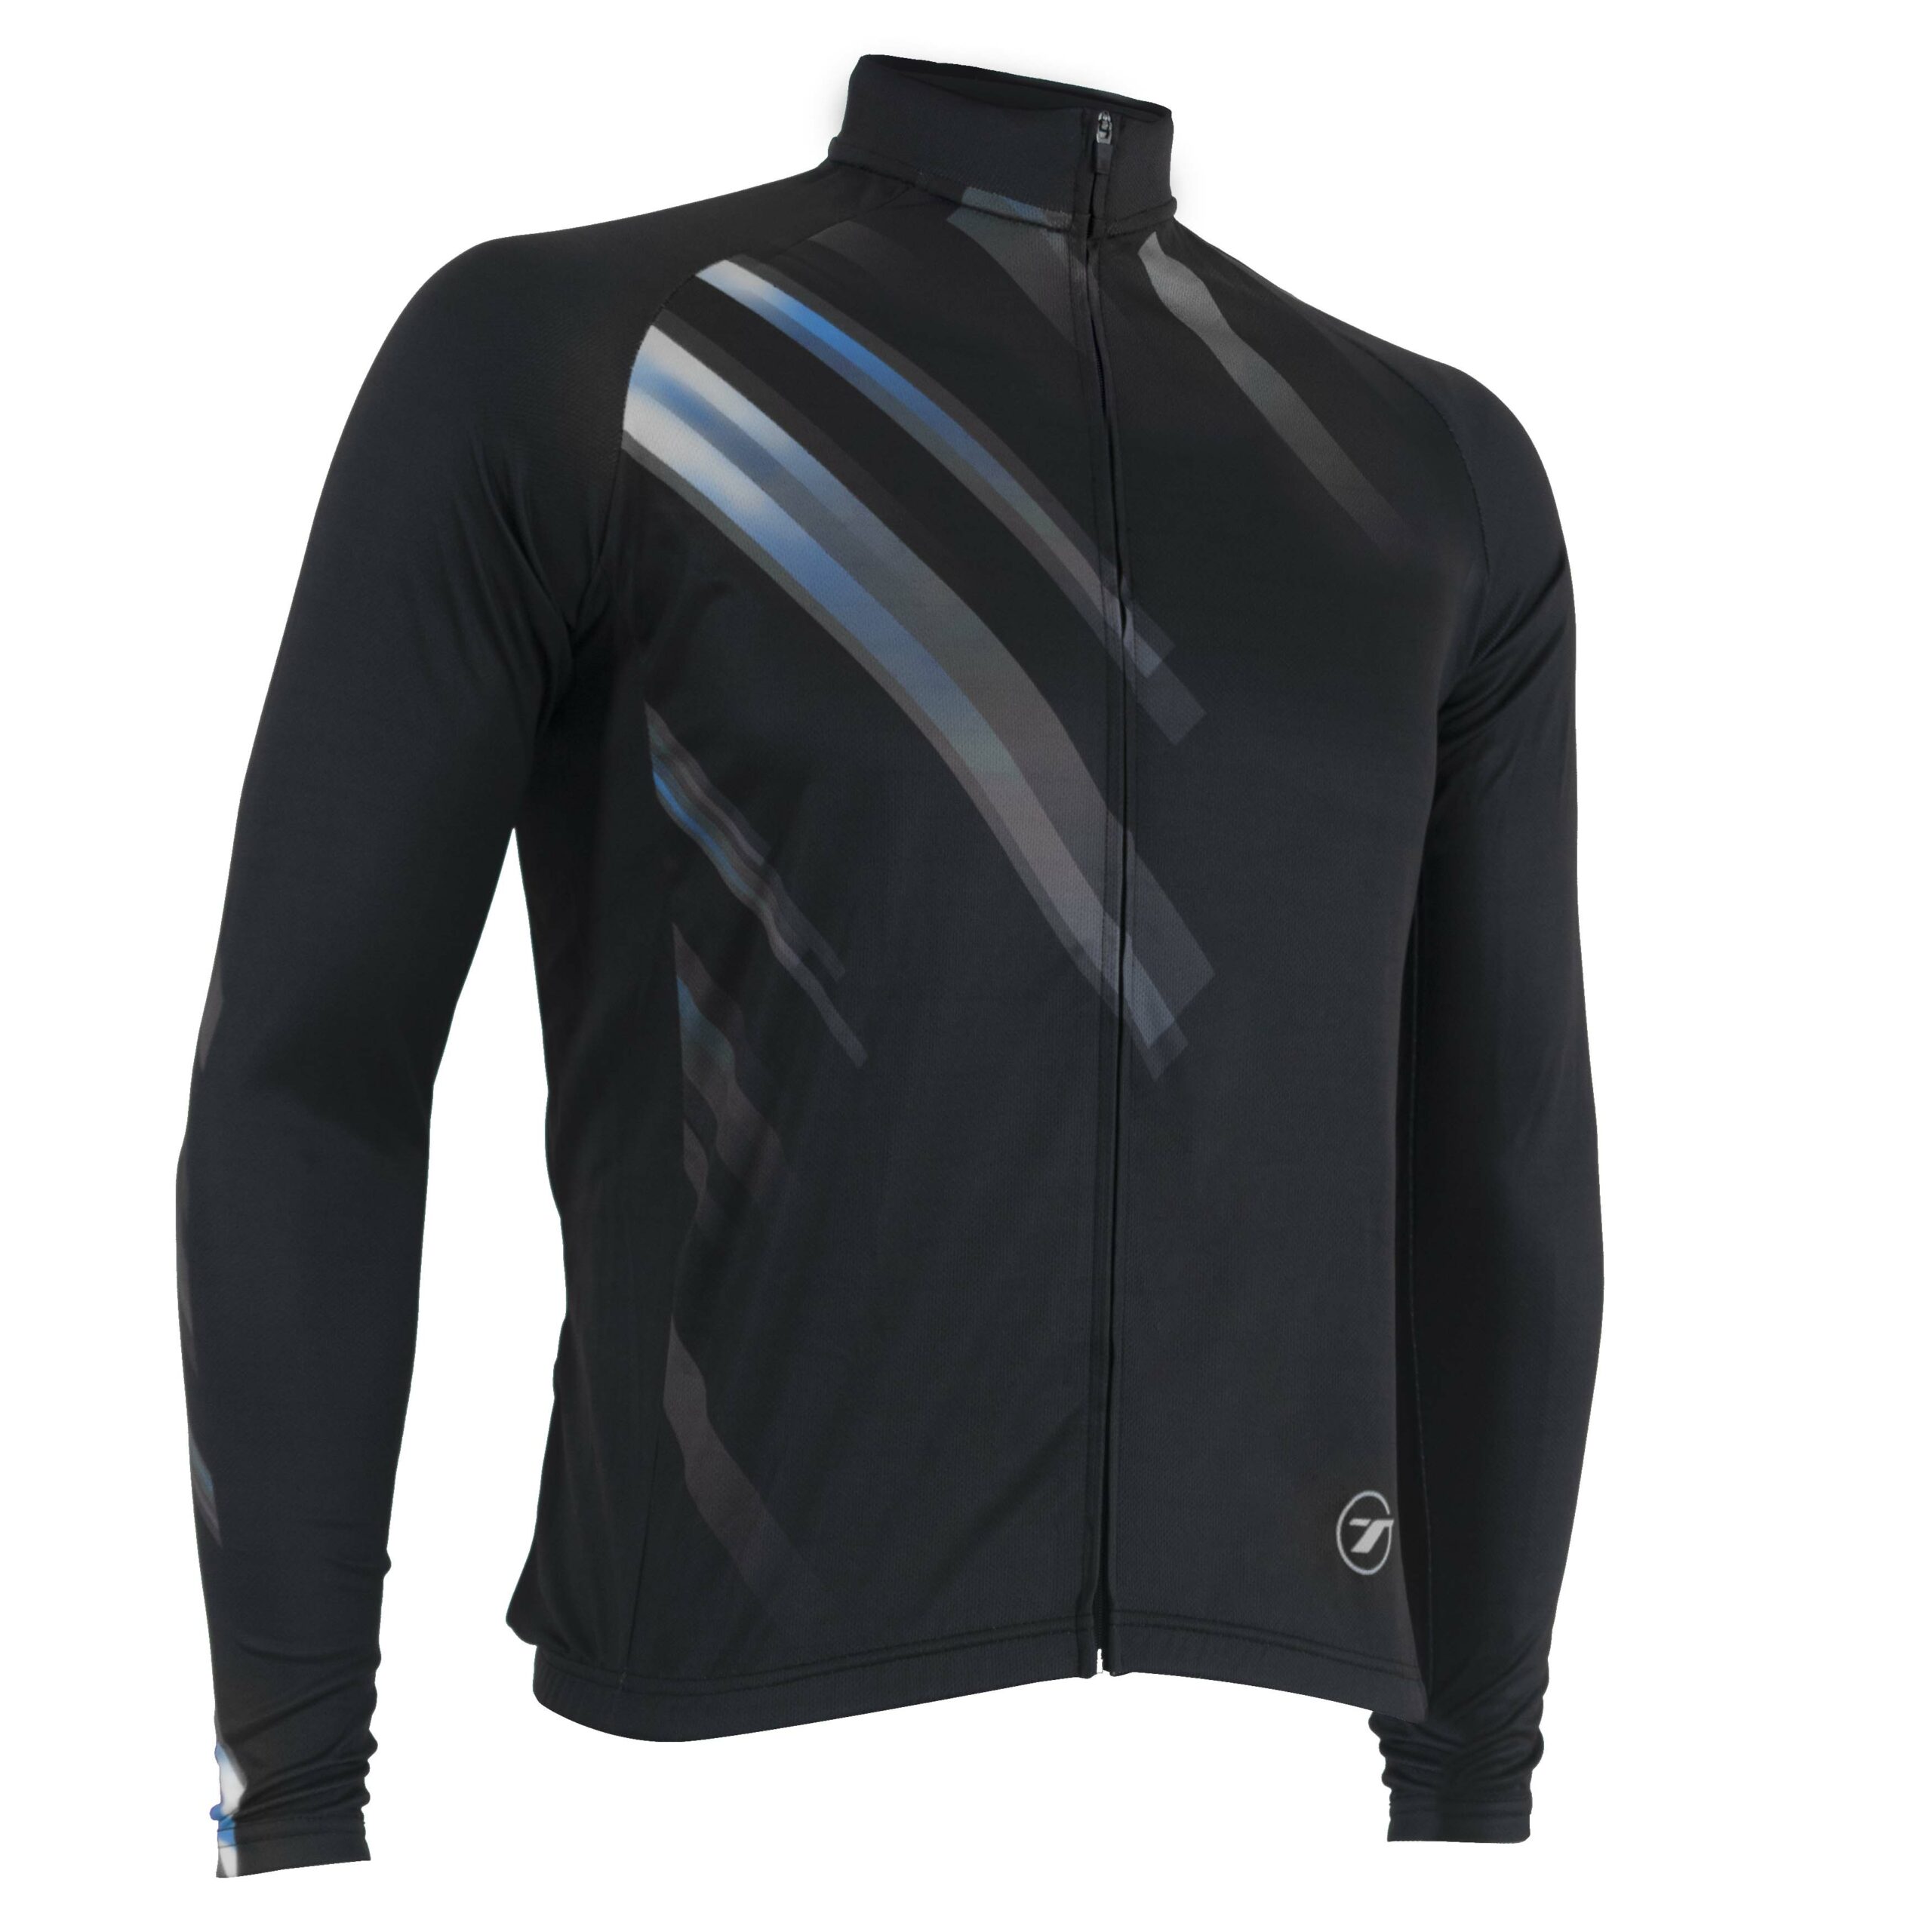 Camisa manga longa para ciclismo SUNNY | RIDE LINE - Preto/Cinza, P